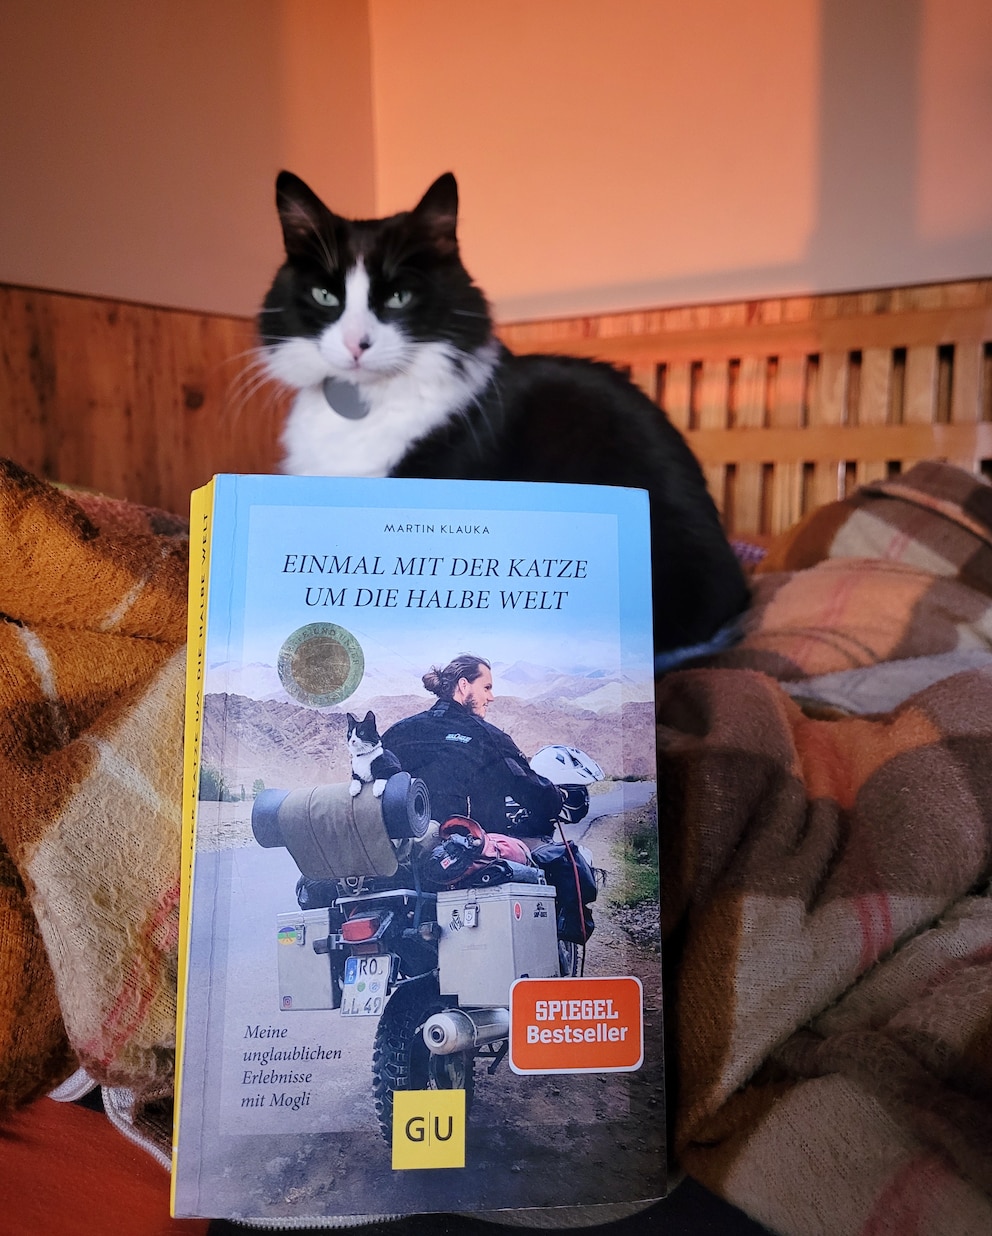 Wenn einer eine Reise tut, dann kann er was erzählen. Das trifft auch auf die Motorradweltreise von Martin Klauka und Mogli zu. In seinem Buch „Einmal mit der Katze um die halbe Welt“ schreibt er über die Abenteuer auf Reisen.